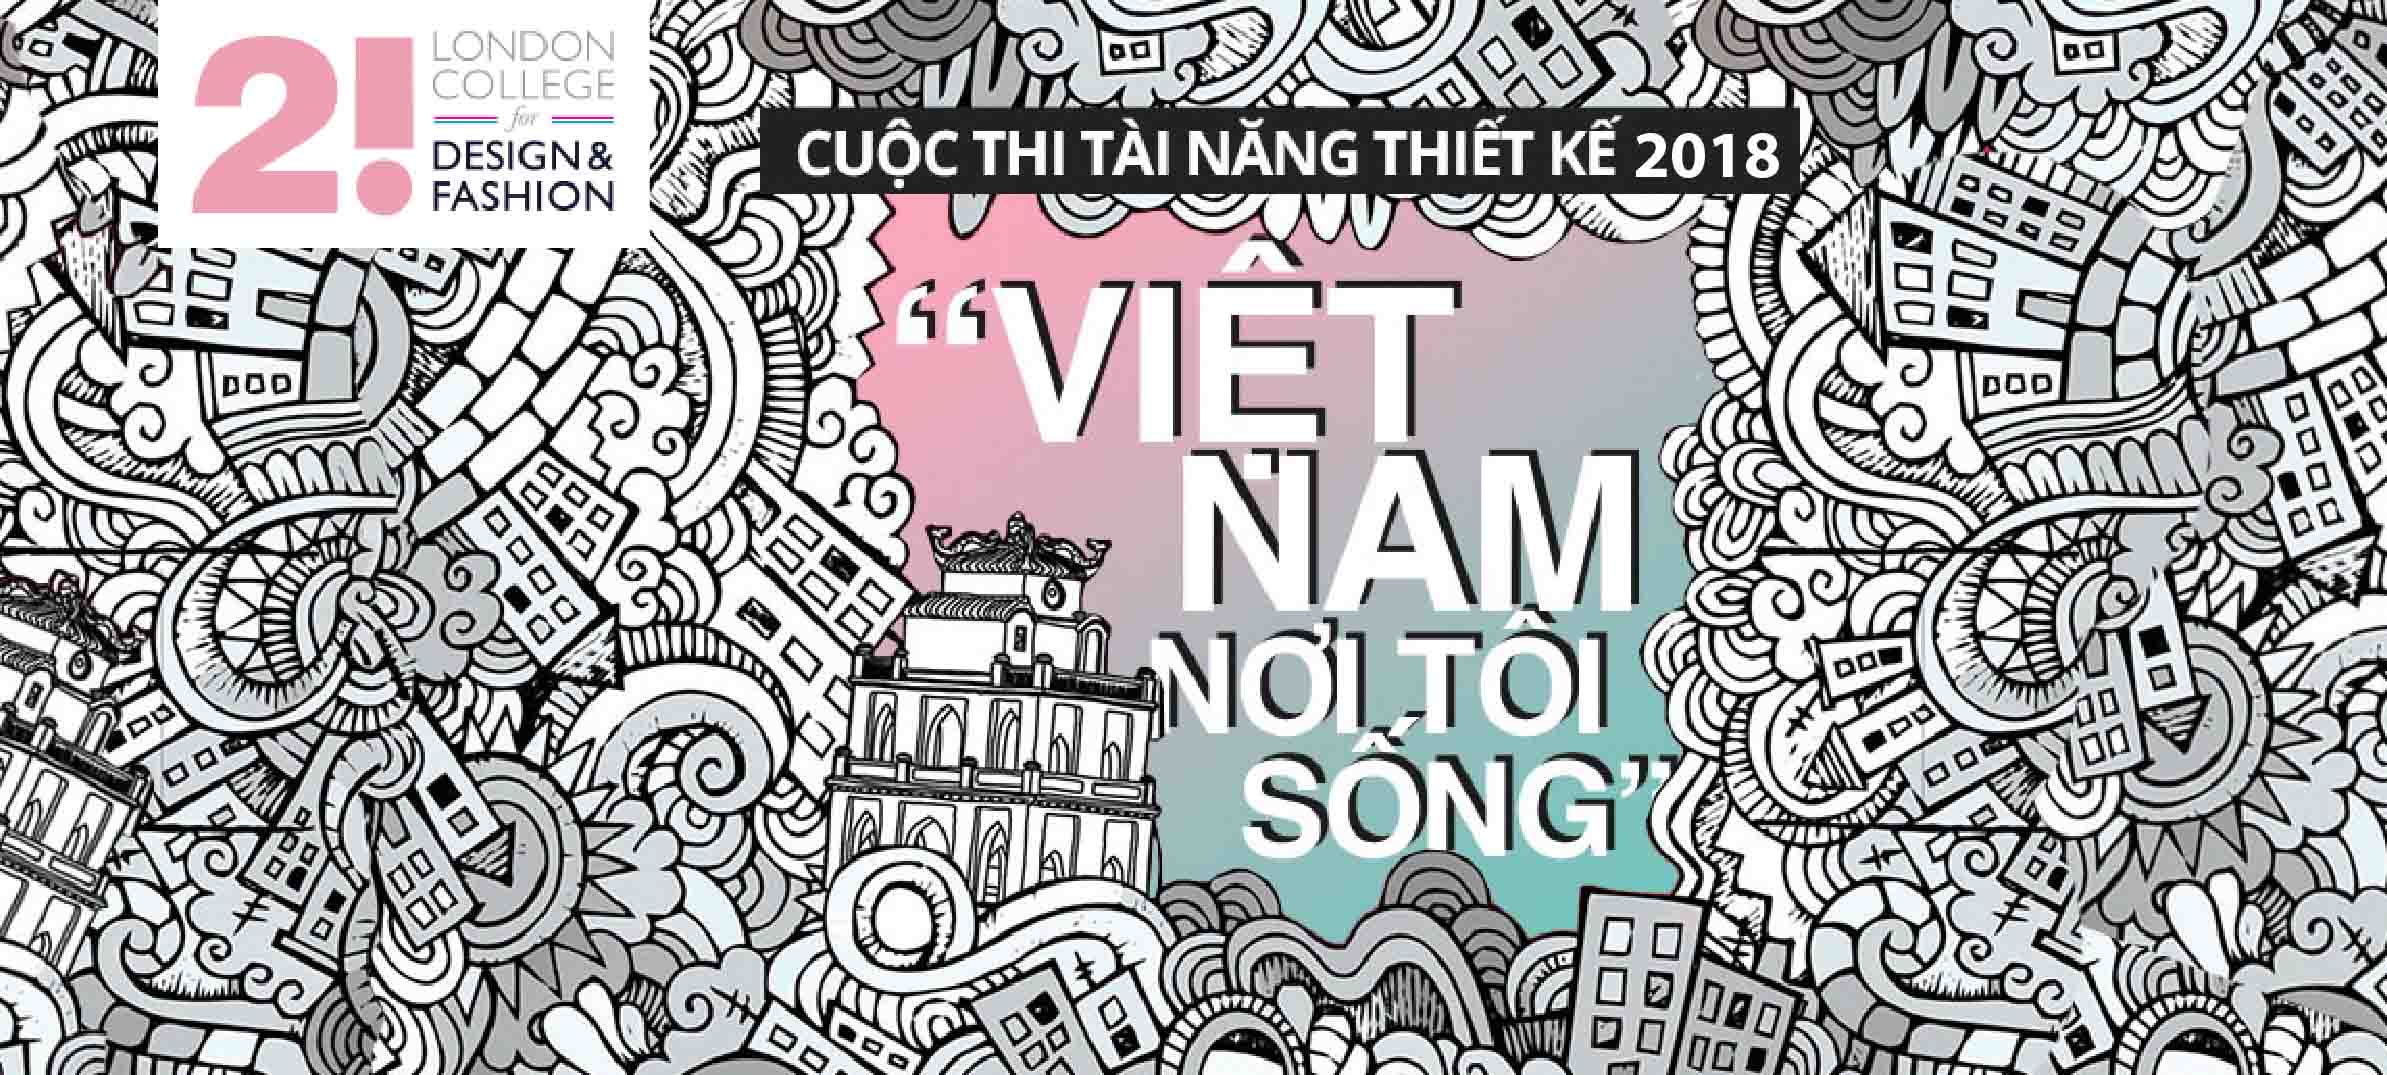 viet-nam-noi-toi-song-2018